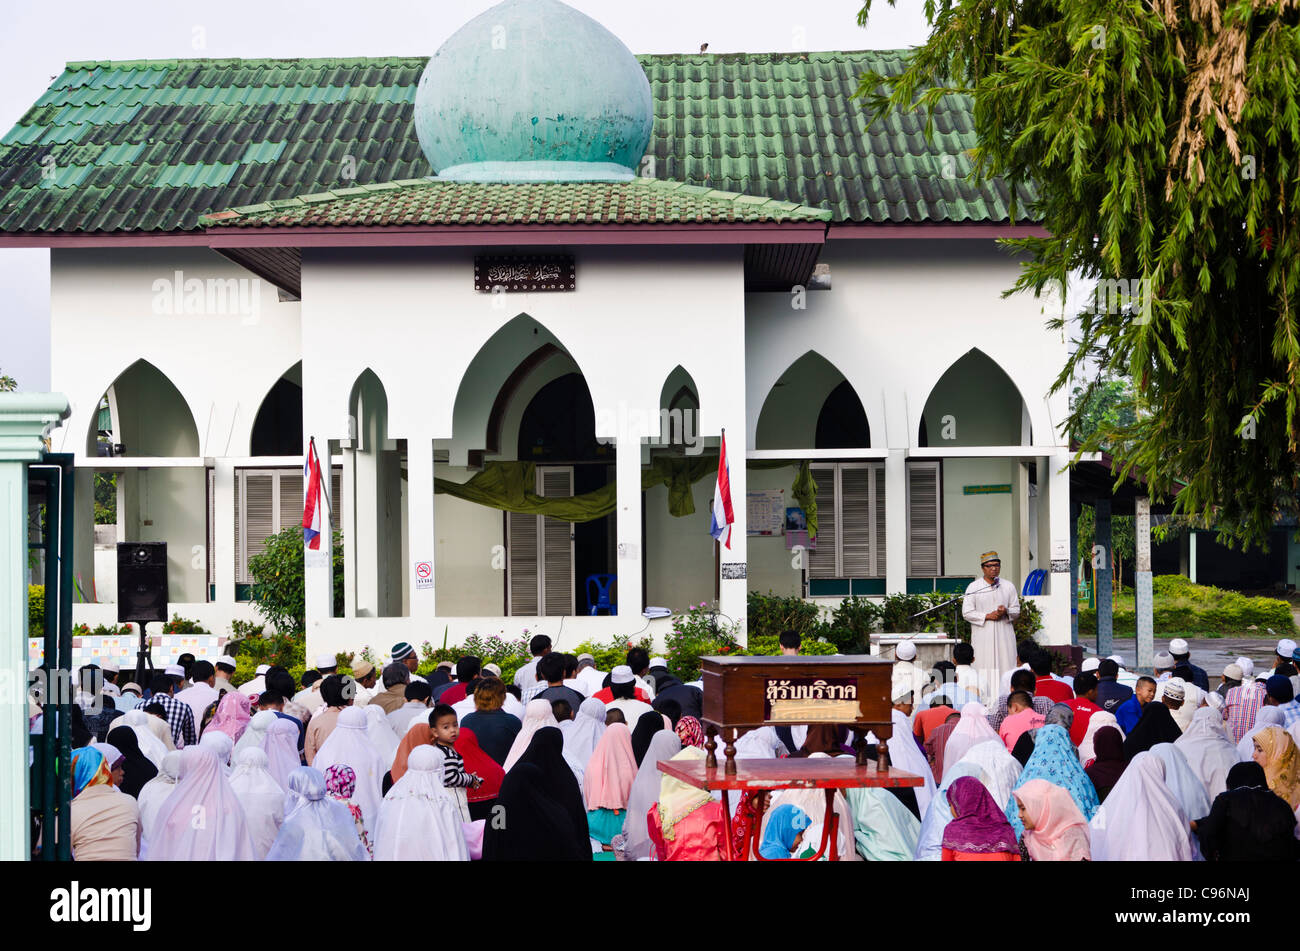 Moschea con outdoor servizio religioso in sessione. Decine di persone sedute a terra in abito di musulmani nel nord della Thailandia Foto Stock